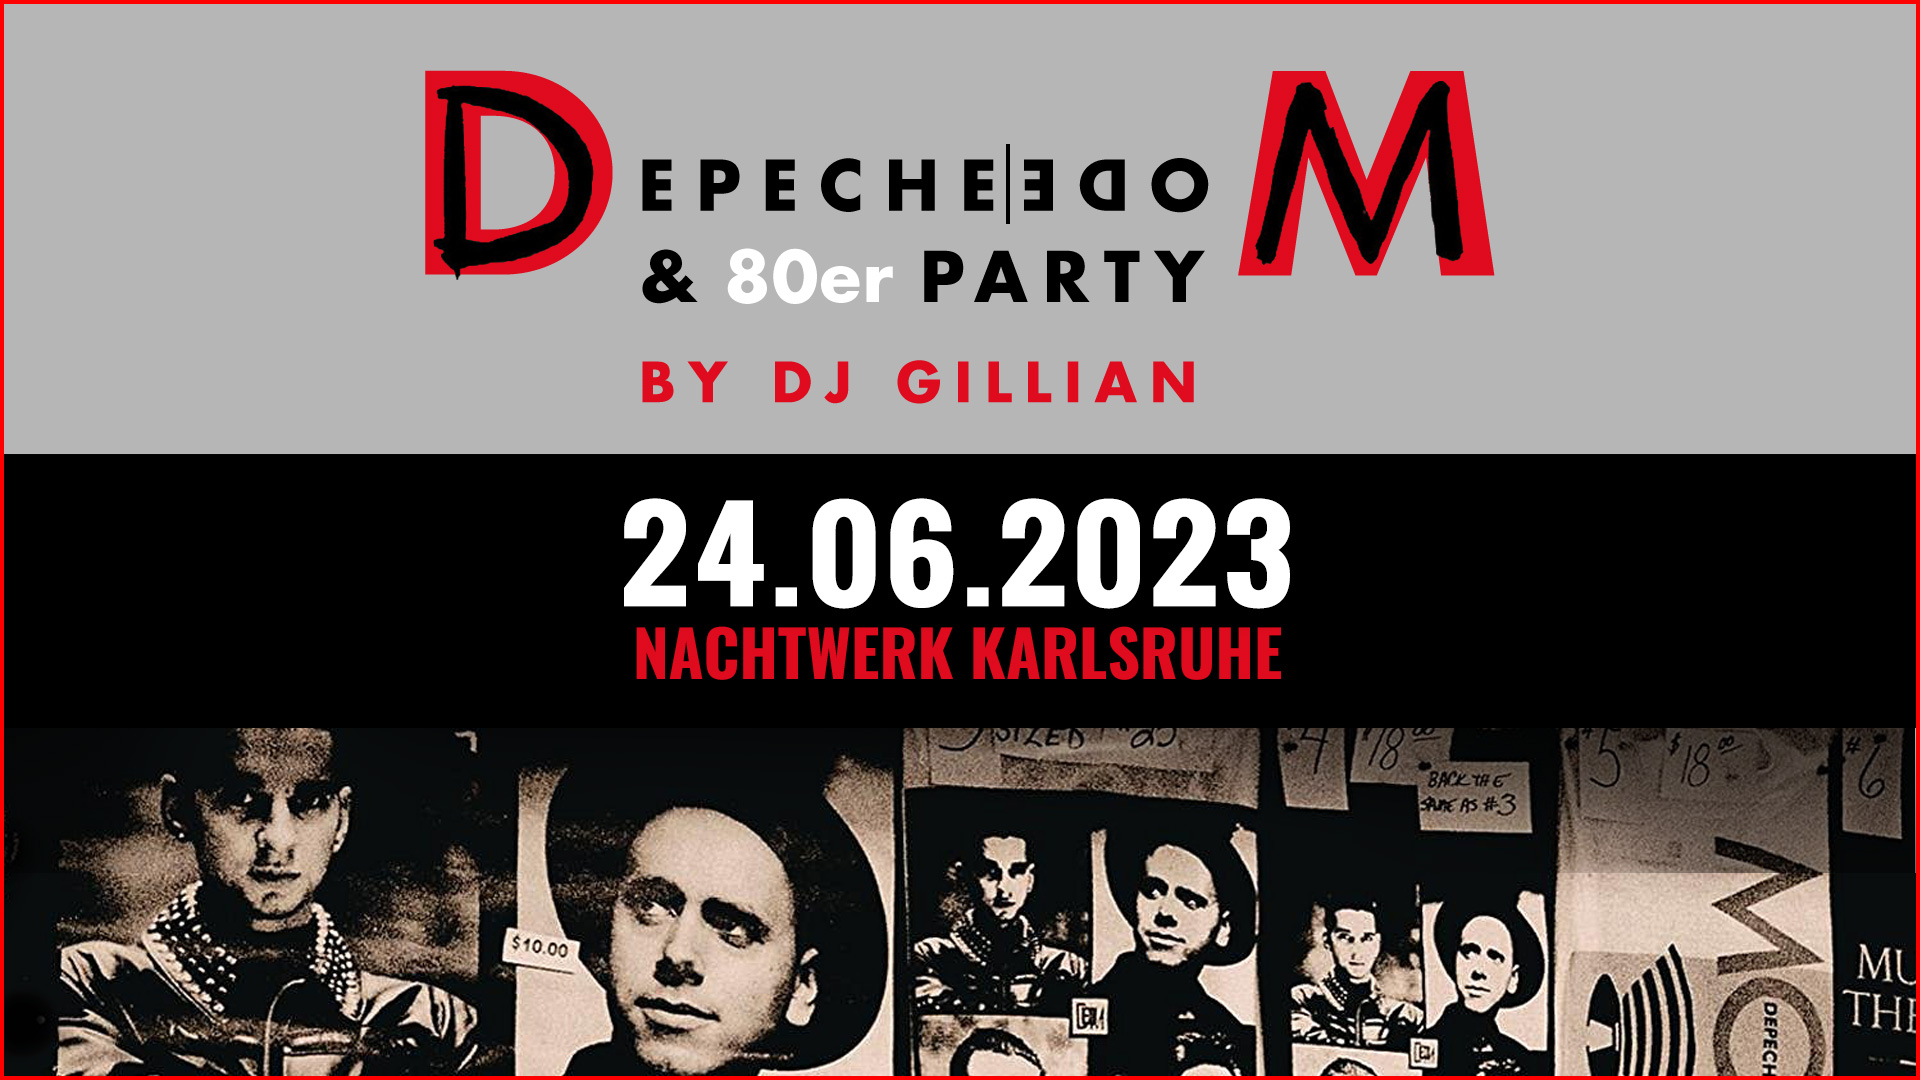 Die legendäre Depeche Mode & 80er Party im Nachtwerk Karlsruhe mit DJ Gillian. Die großartigen Songs von Depeche Mode, die kultigsten Hits aus den 80ern und die beliebtesten Pop & Wave Klassiker.